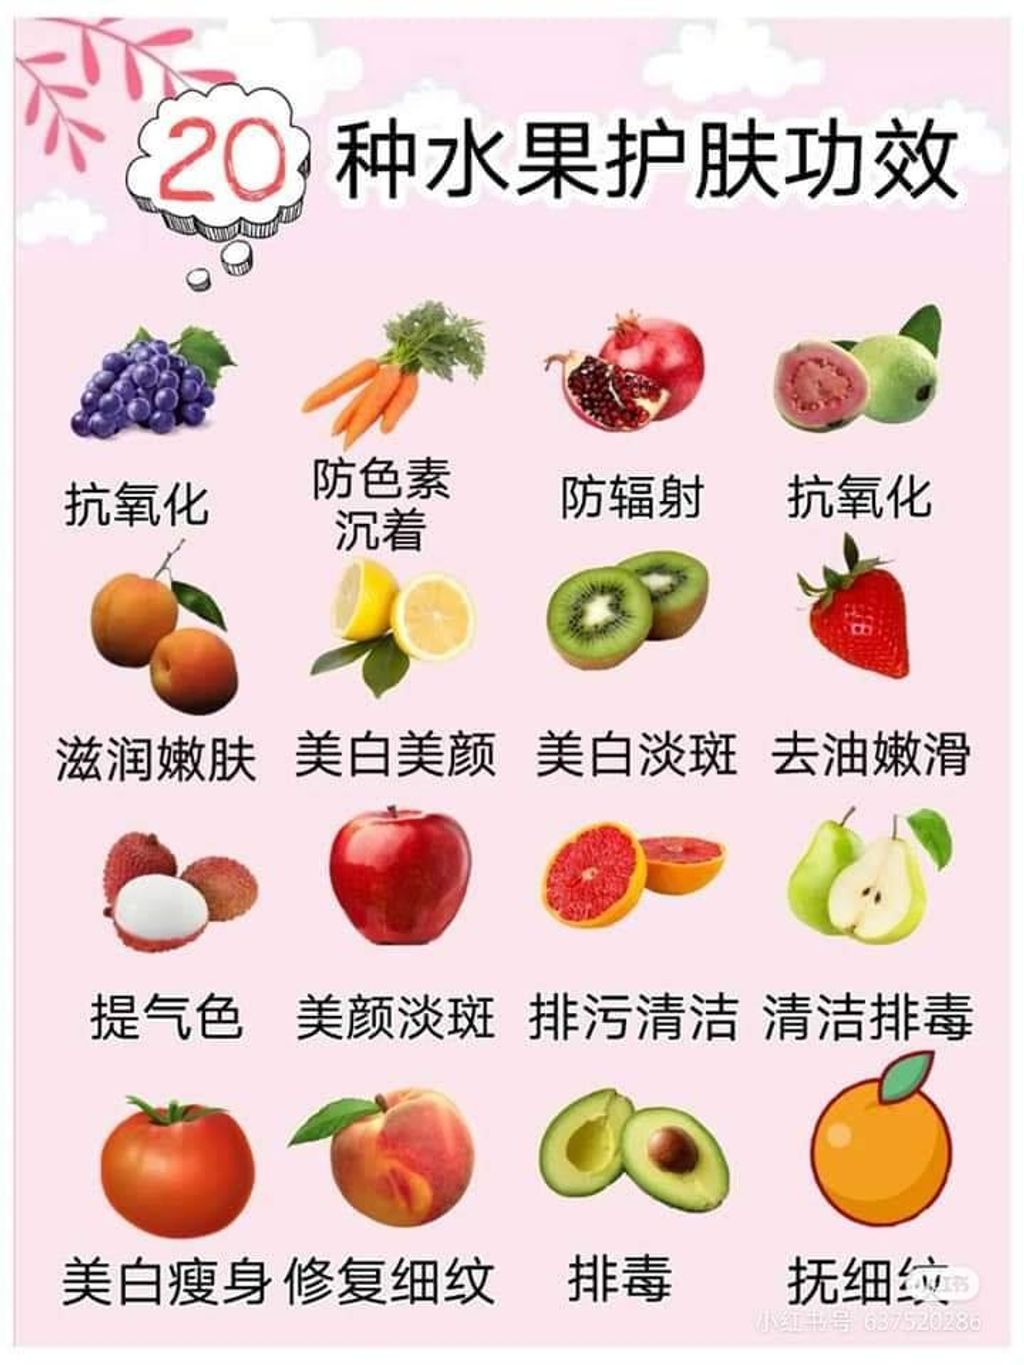 20种水果护肤功效